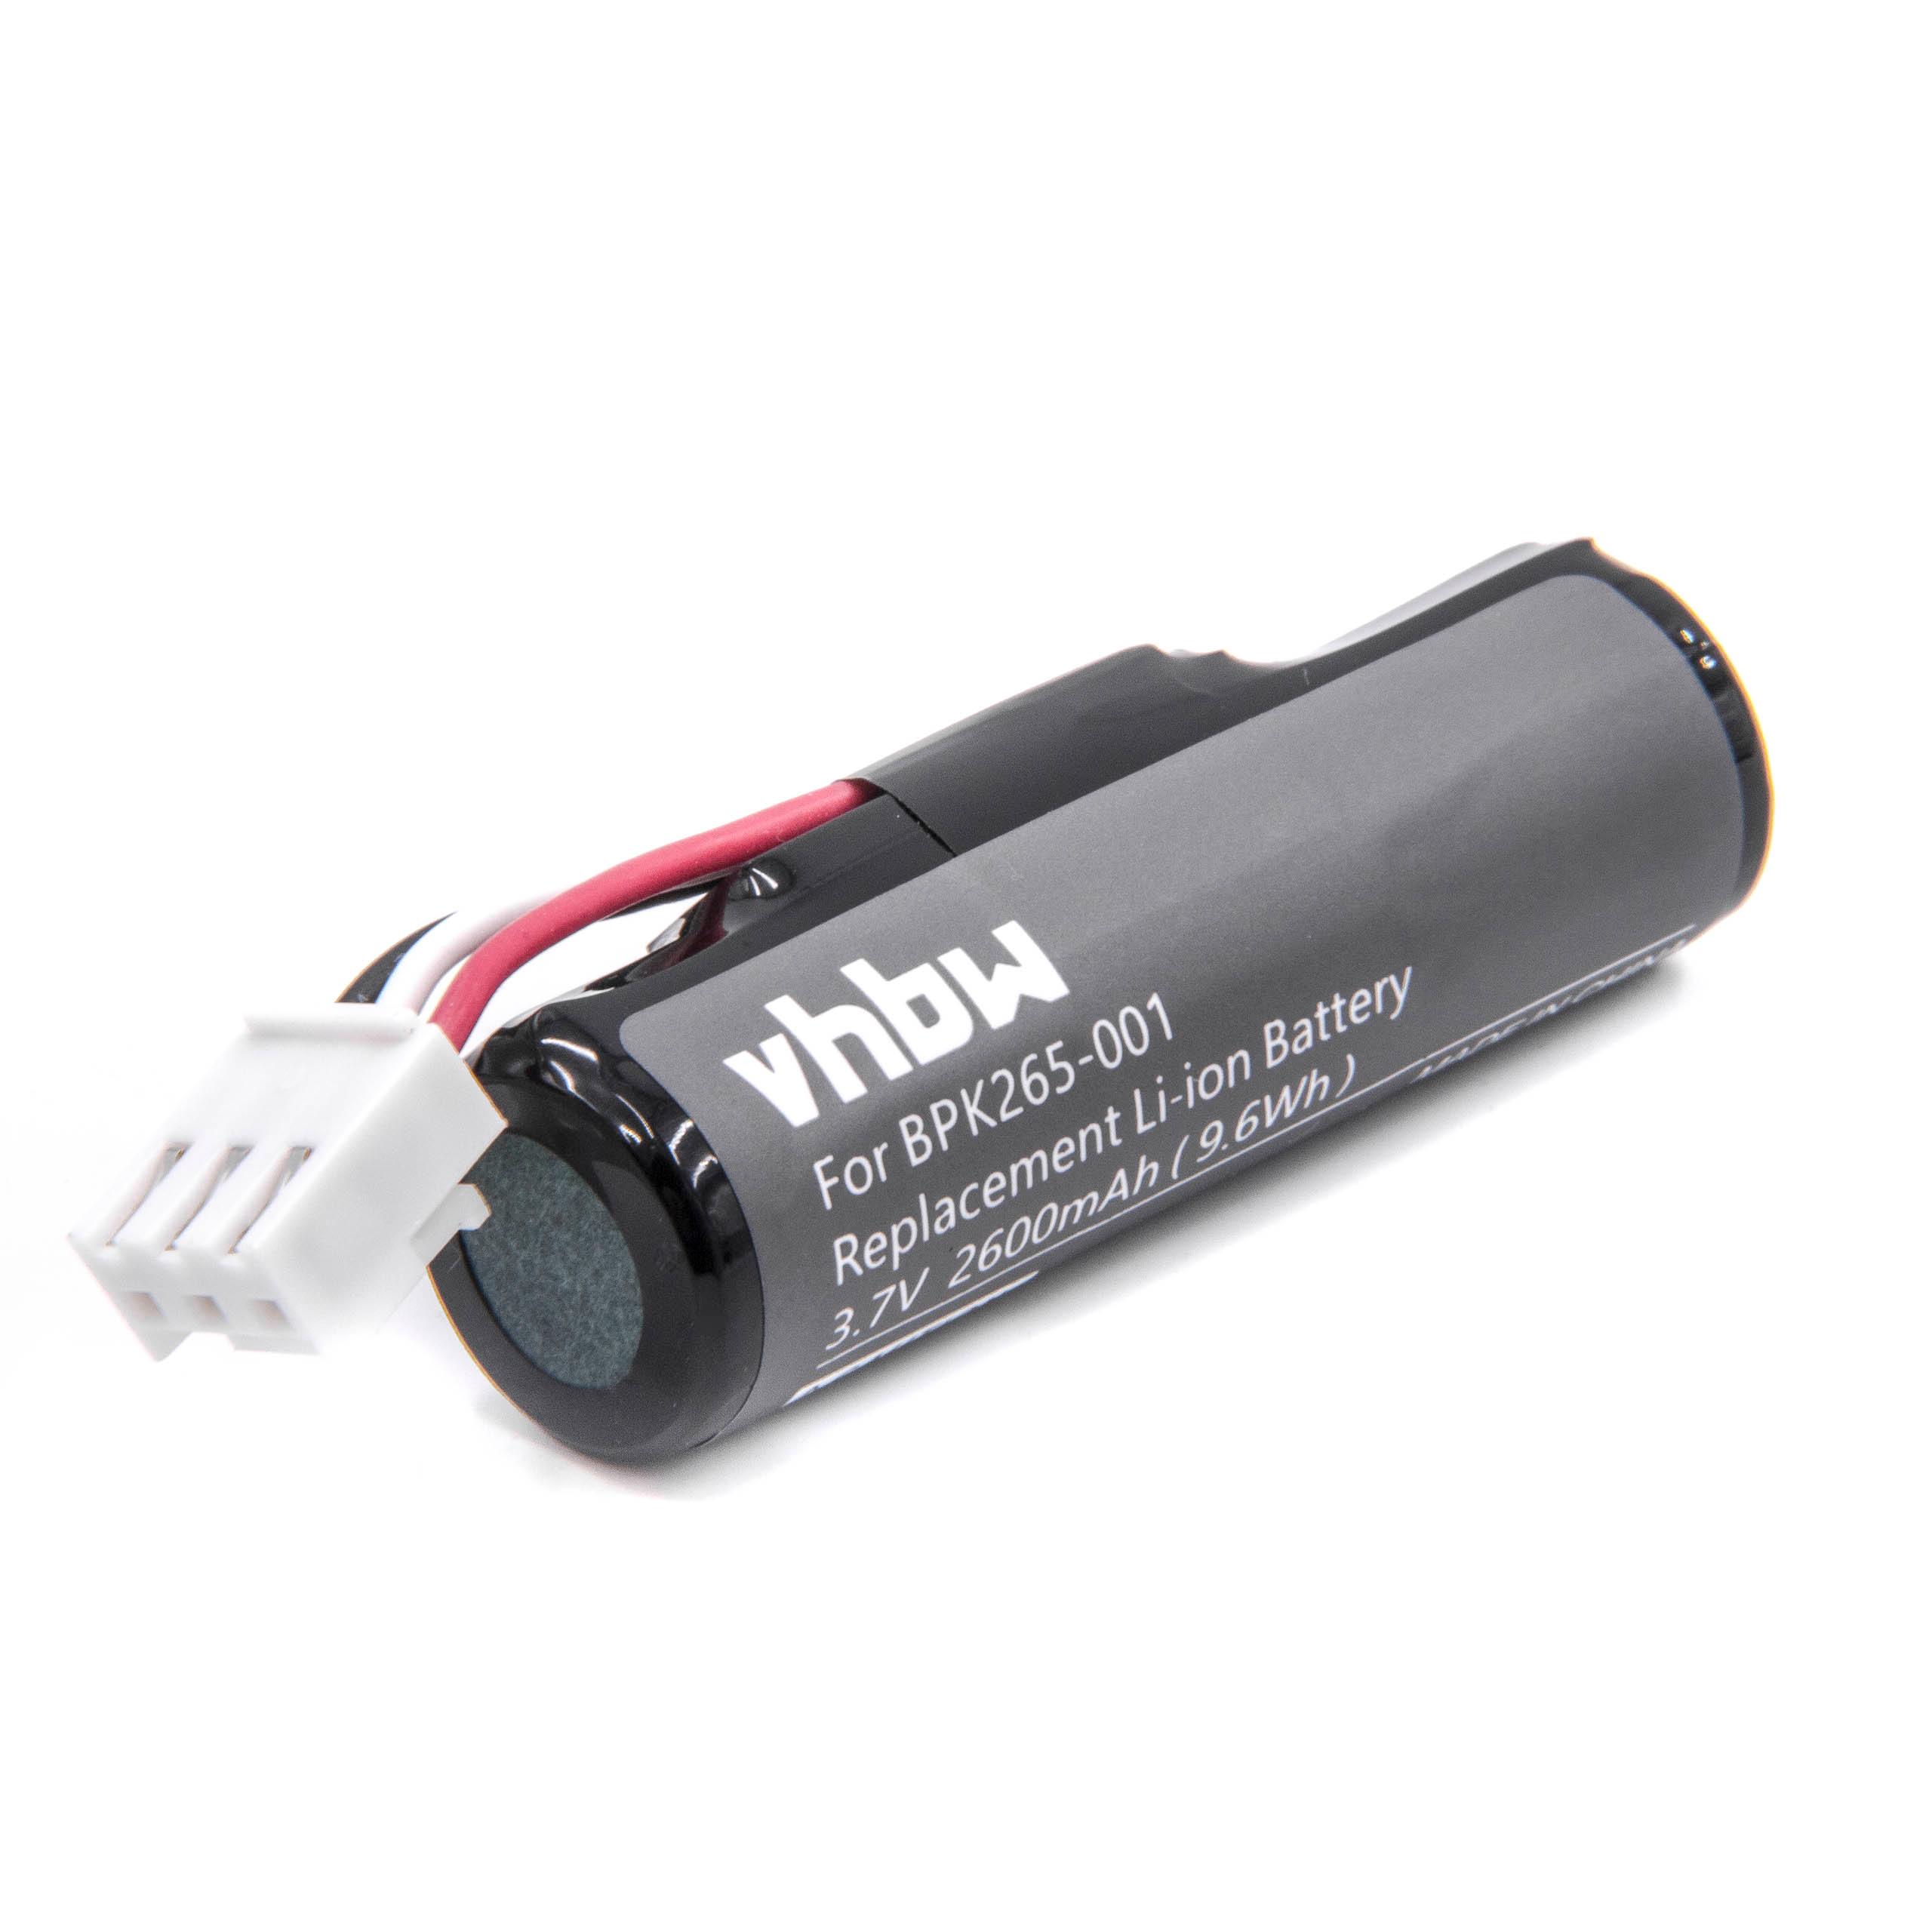 Batterie remplace Aisino IS803 pour scanner de code-barre - 2600mAh 3,7V Li-ion